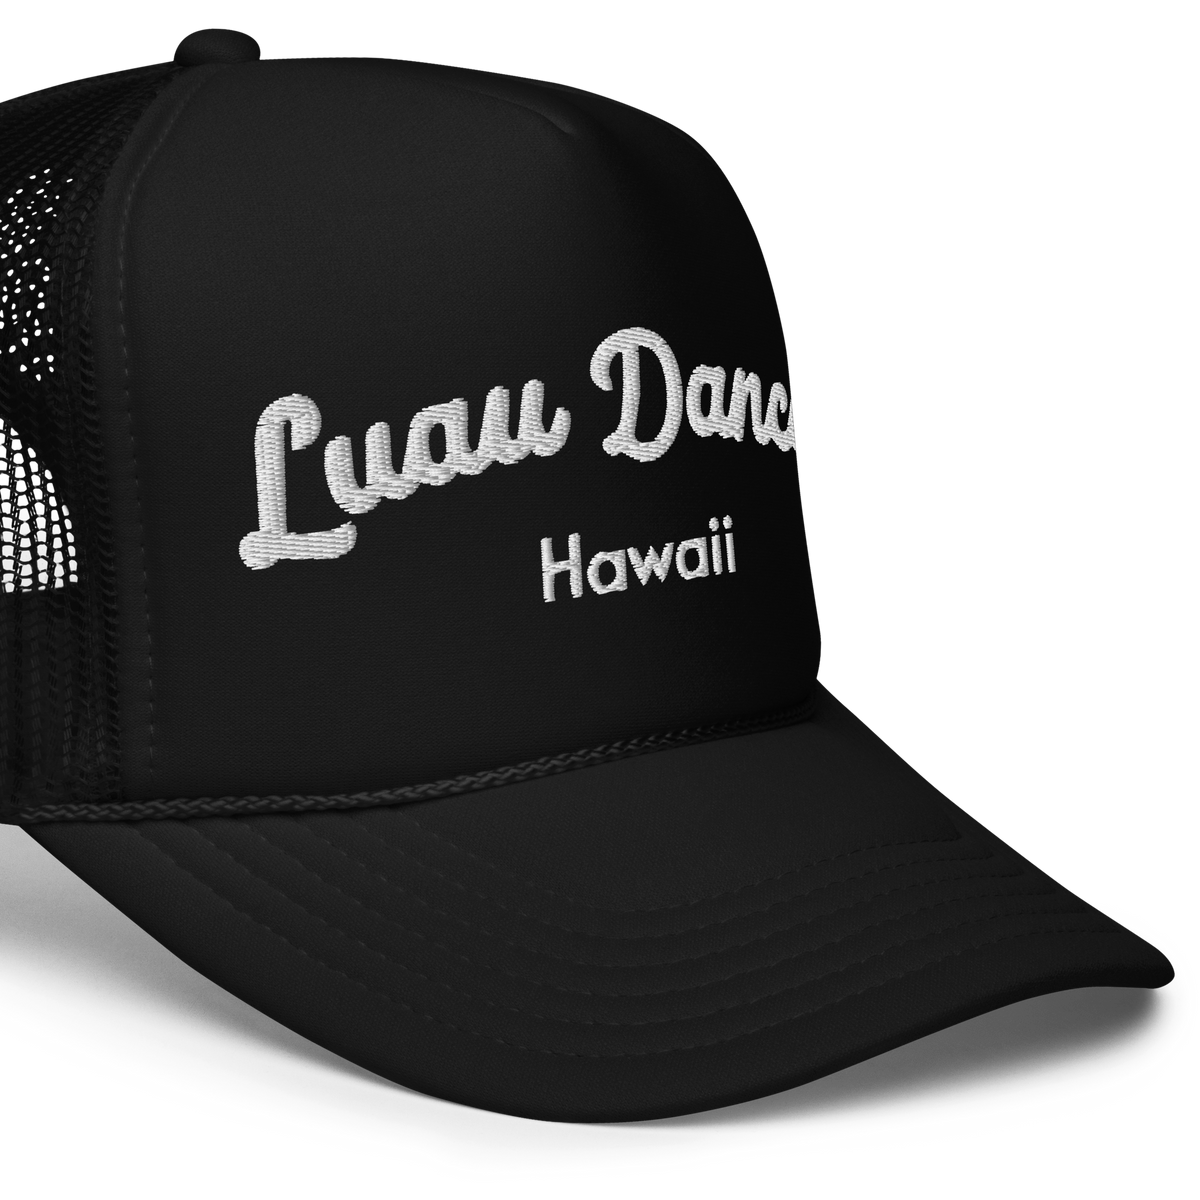 Luau Dancer - Foam trucker hat